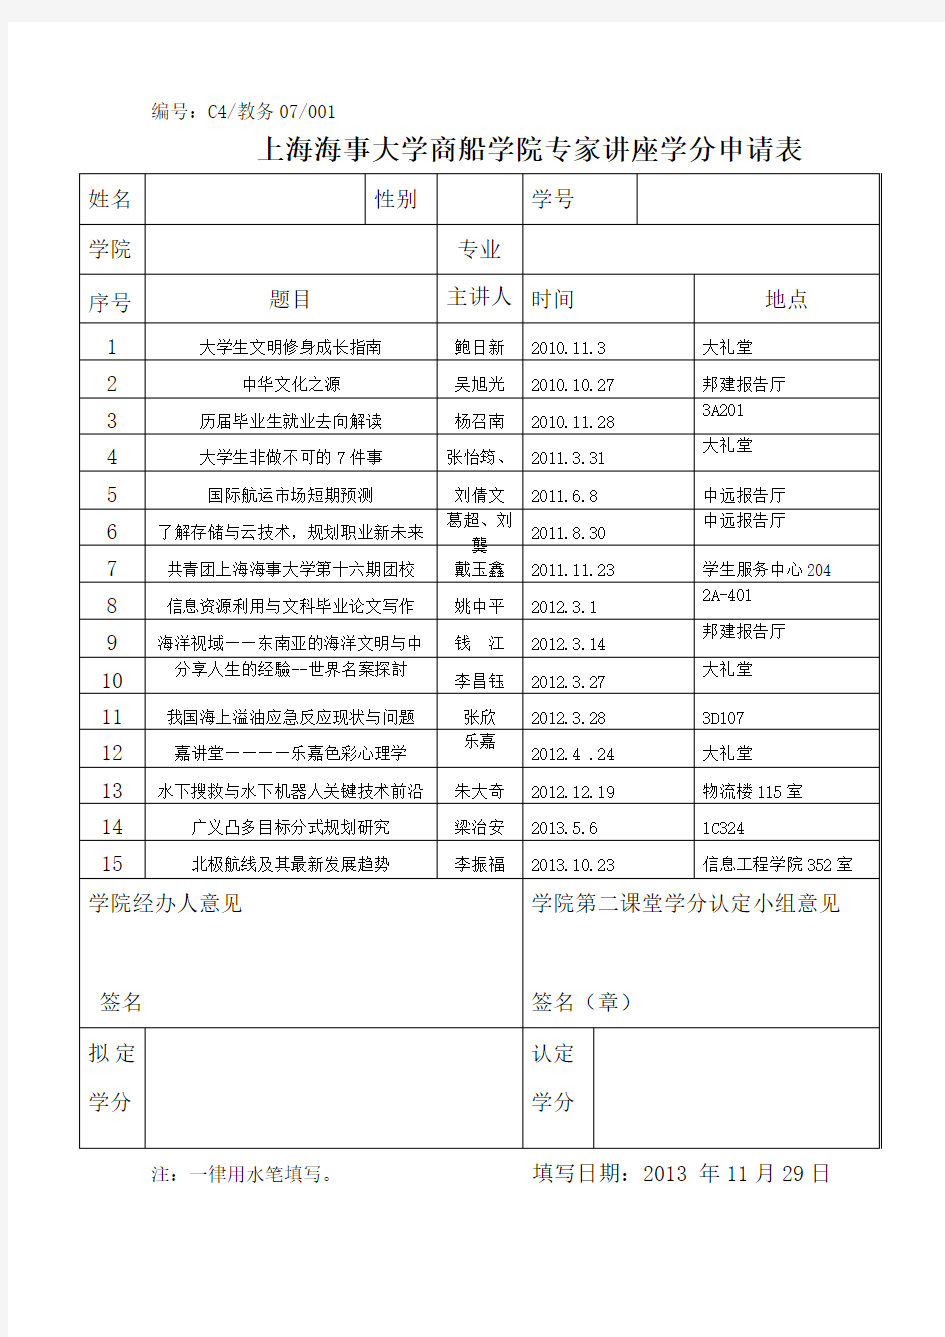 上海海事大学第二课堂讲座学分申请表 .